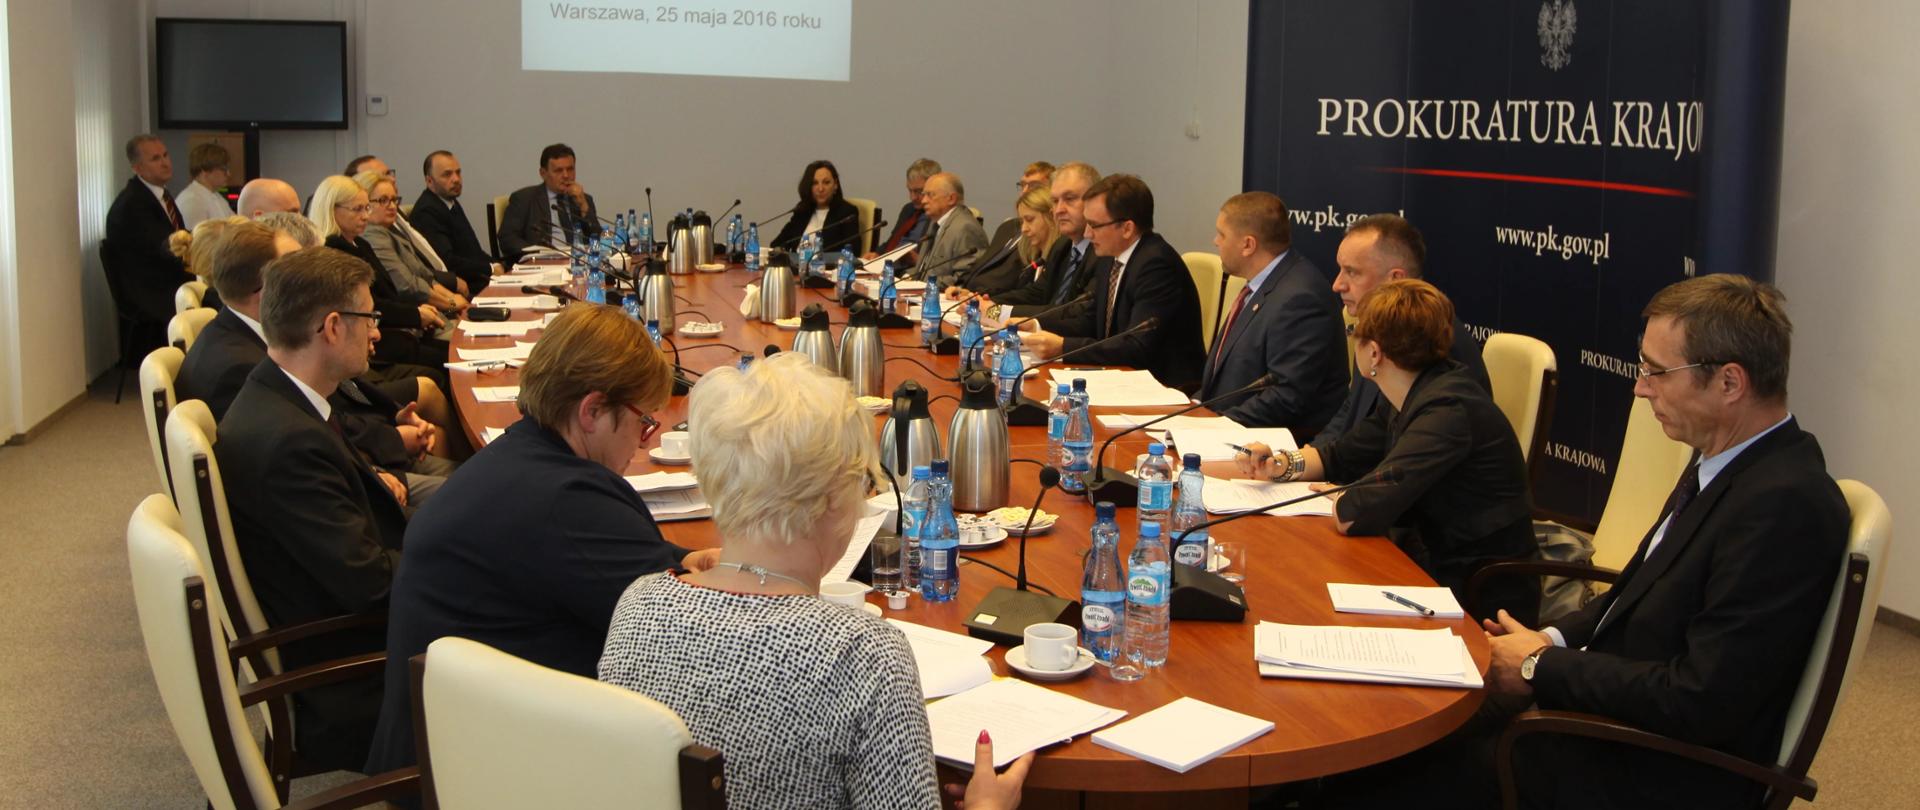 zdjęcie przedstawiające kierownictwo Prokuratury Krajowej okrągłym stole podczas pierwszego posiedzenia Krajowej Rady Prokuratorów przy Prokuratorze Generalnym